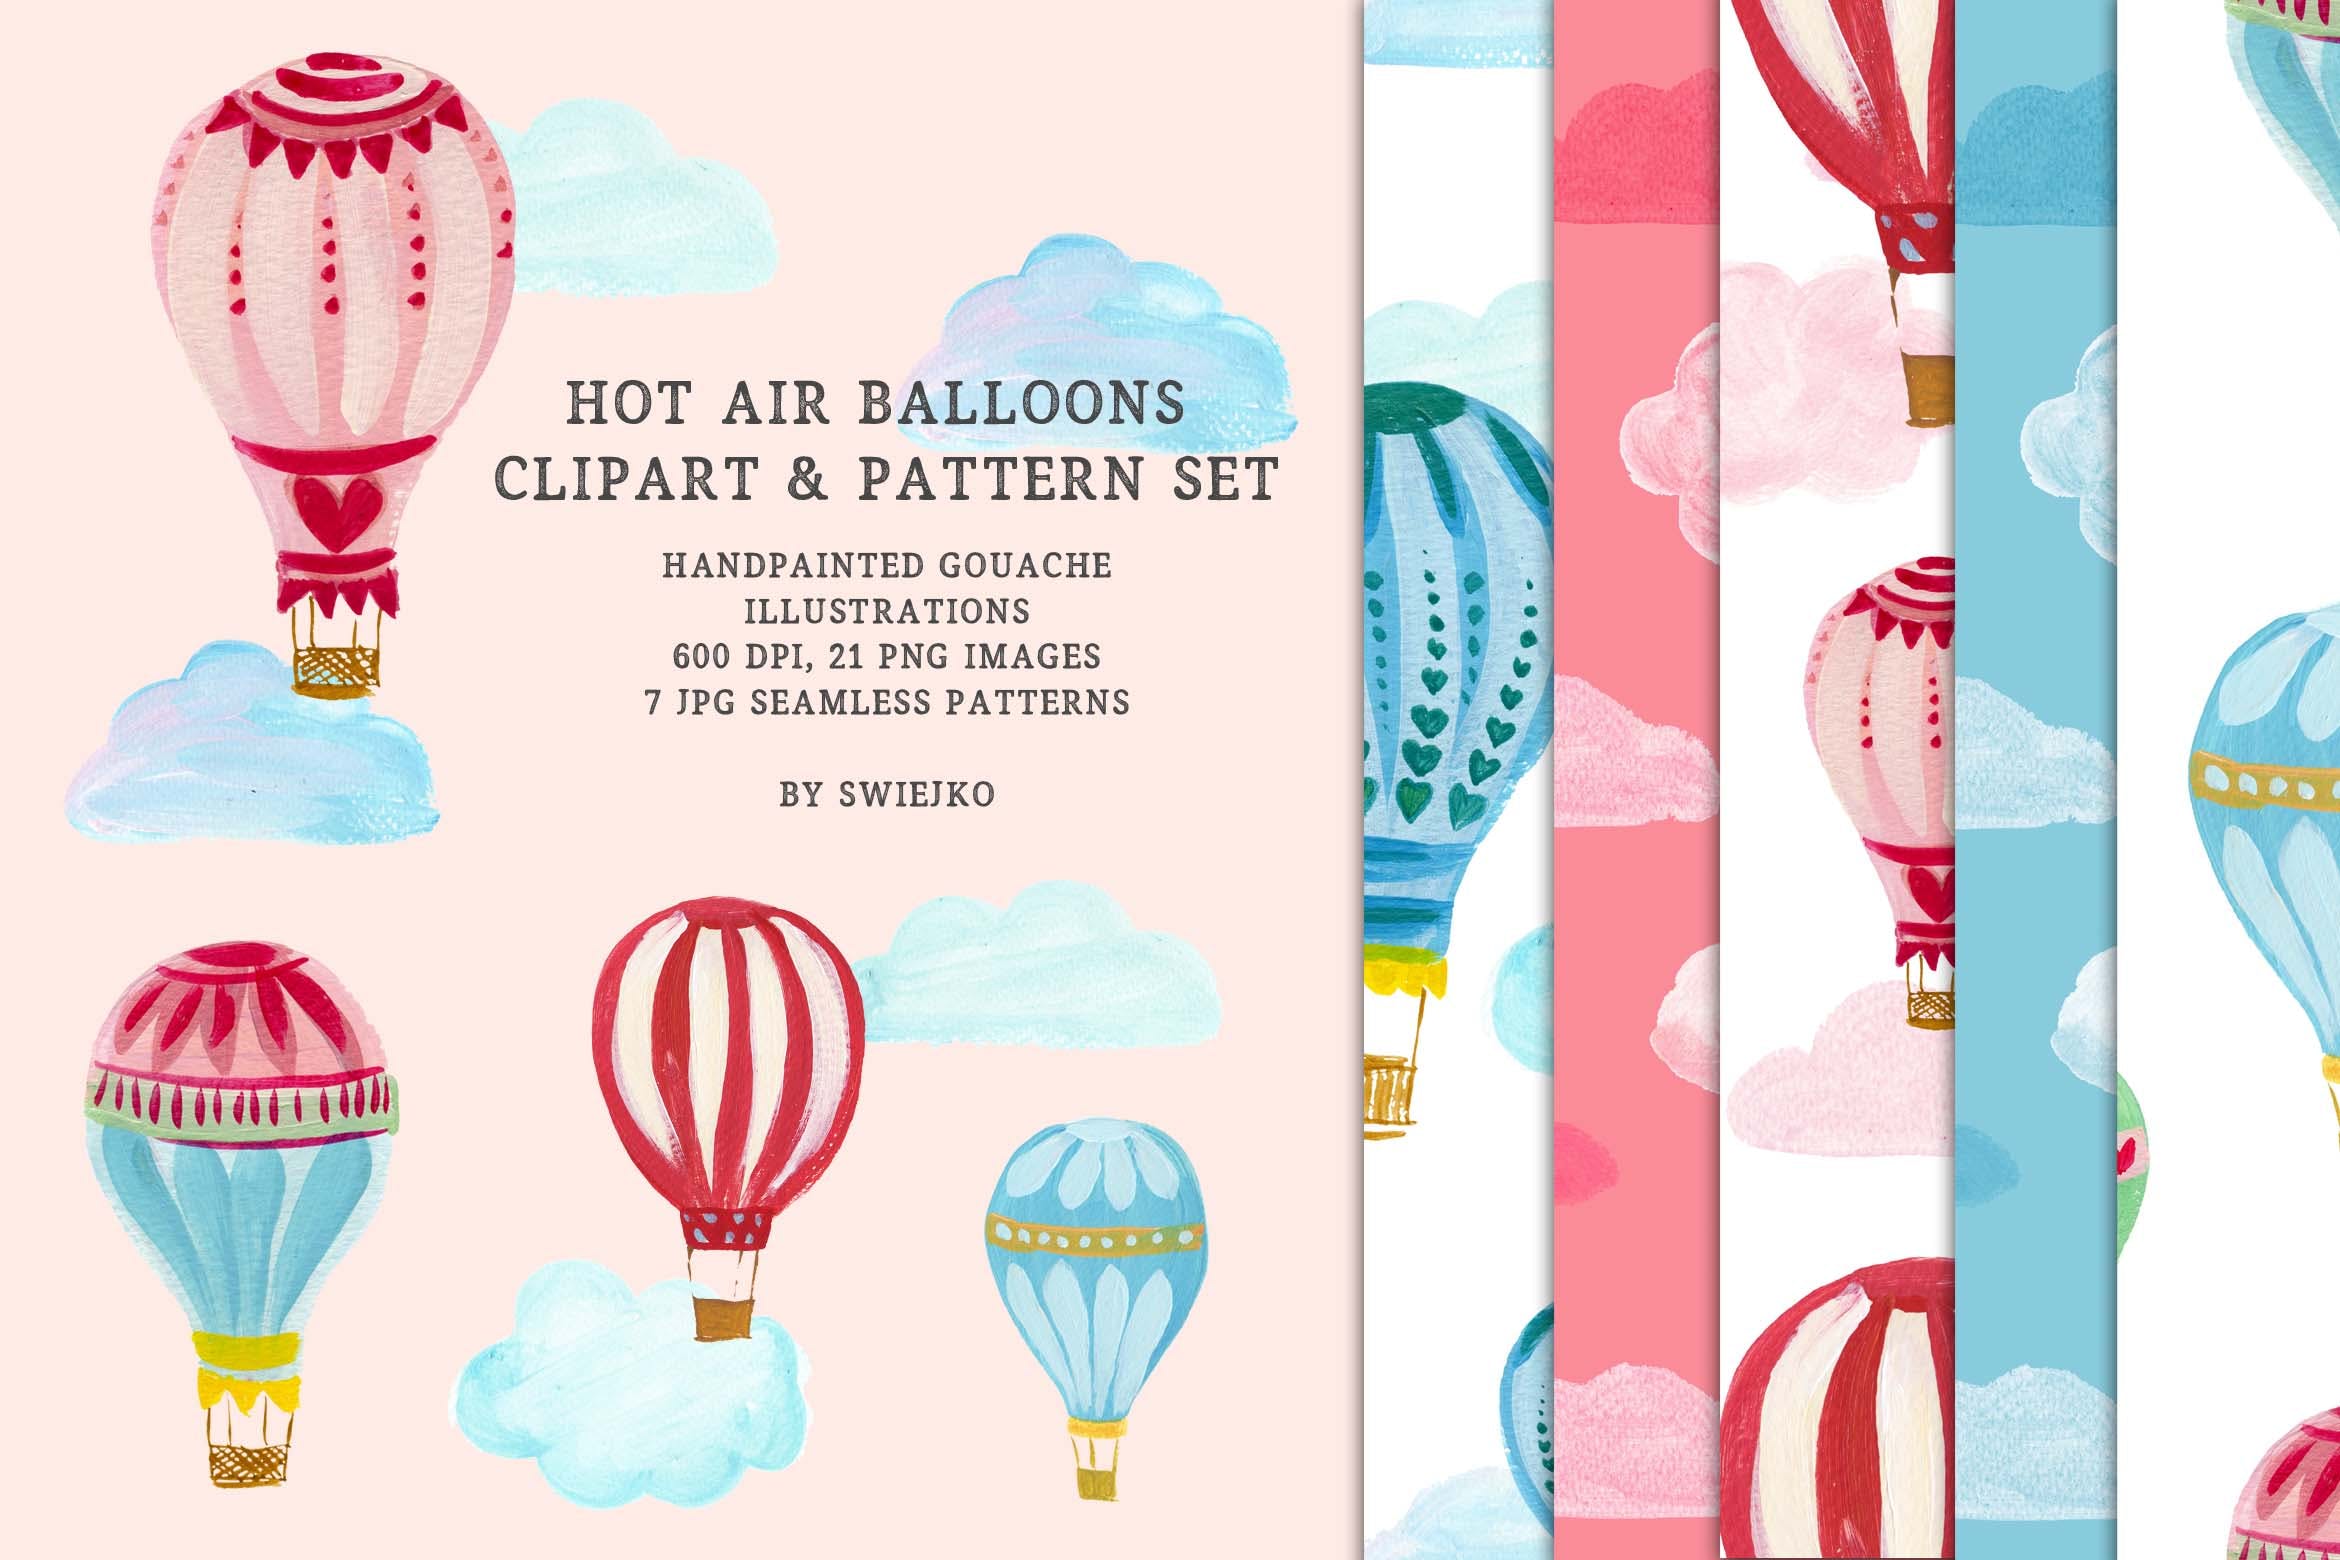 热气球剪贴画和图案集 Hot Air Balloons clipart & pattern set 图片素材 第1张